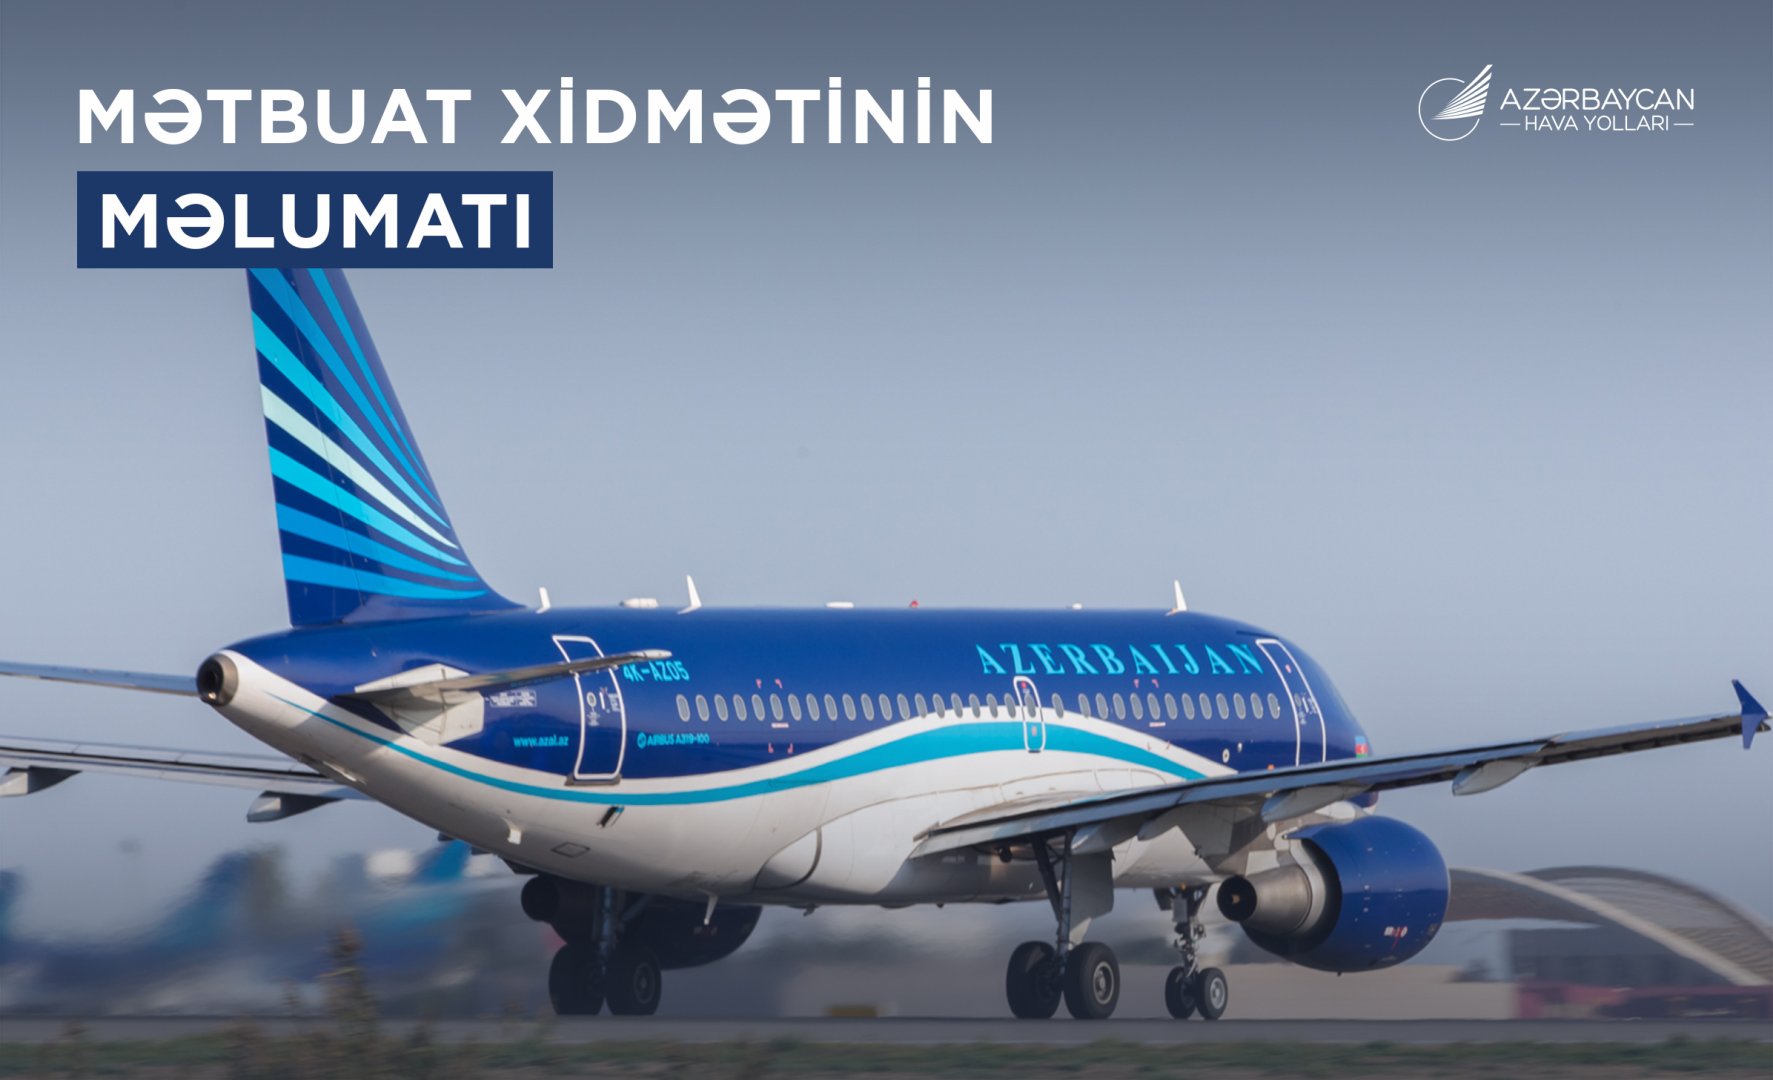 Самолет AZAL, выполнявший рейс по маршруту Баку-Дубай, вернулся в аэропорт вылета из-за последствий непогоды